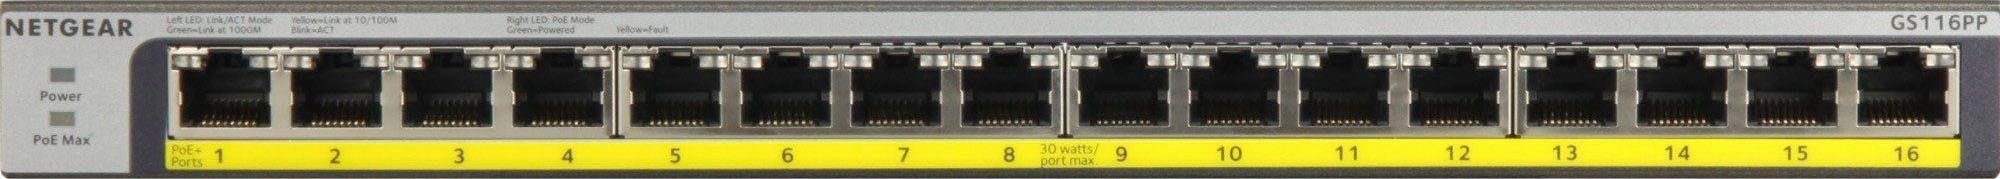 NETGEAR GS116PP Netzwerk-Switch